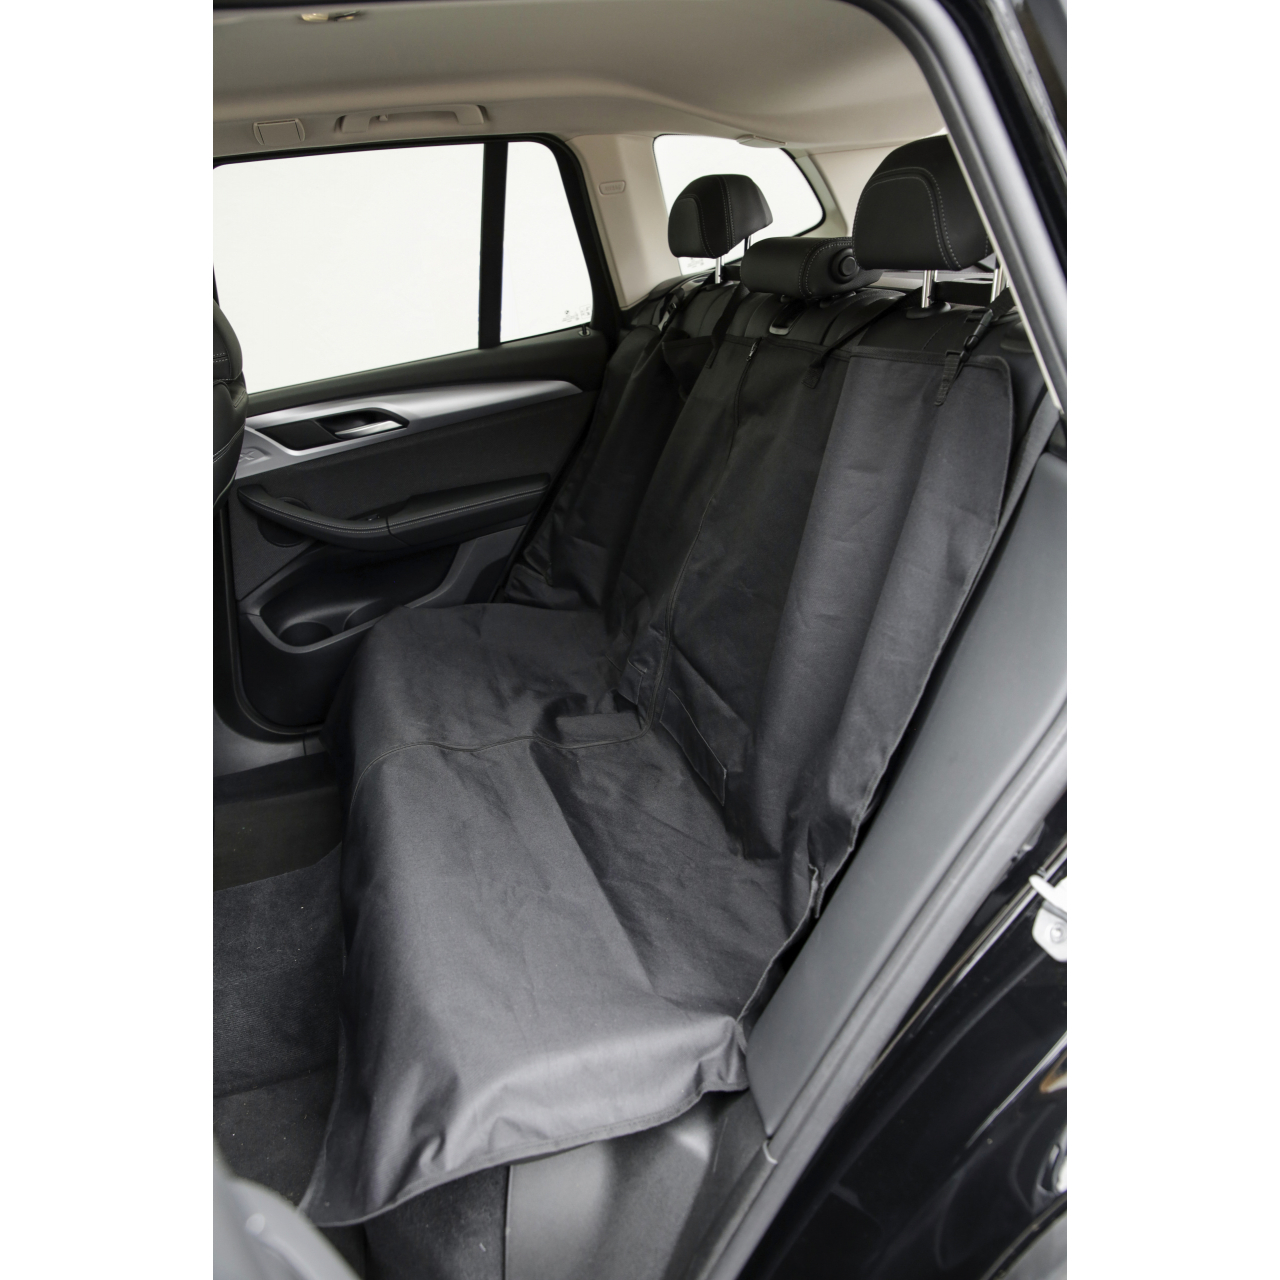 Védőtakaró autóba - fekete, hátsó ülésre